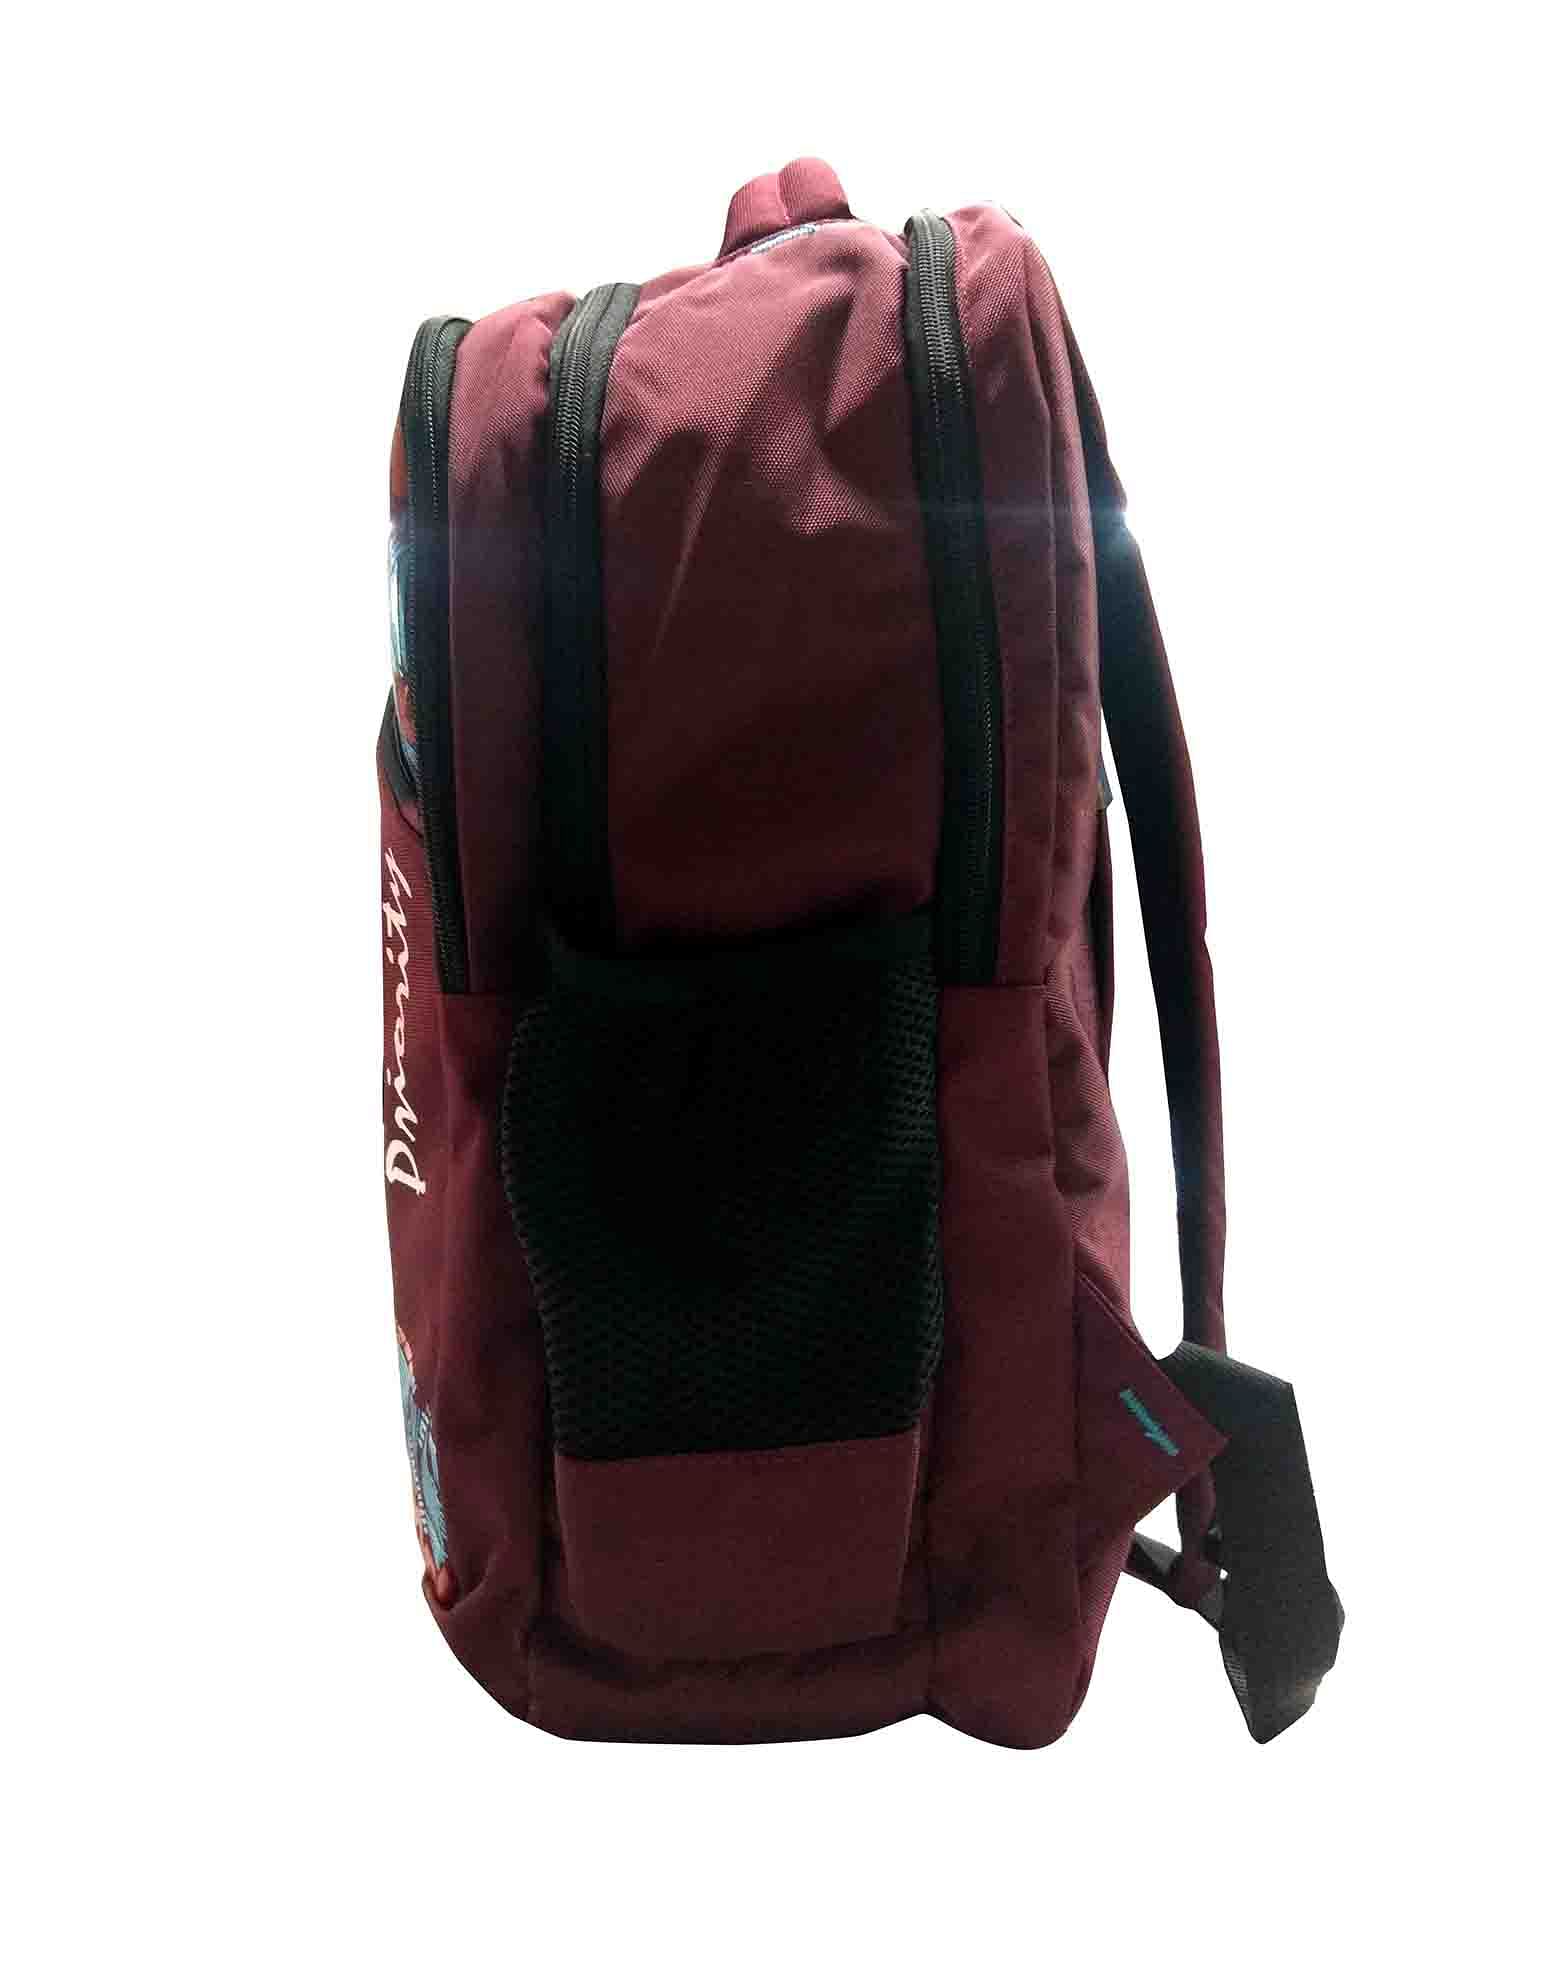 HS HIPPIE 01 -MAROON/BLUE Backpack Bag